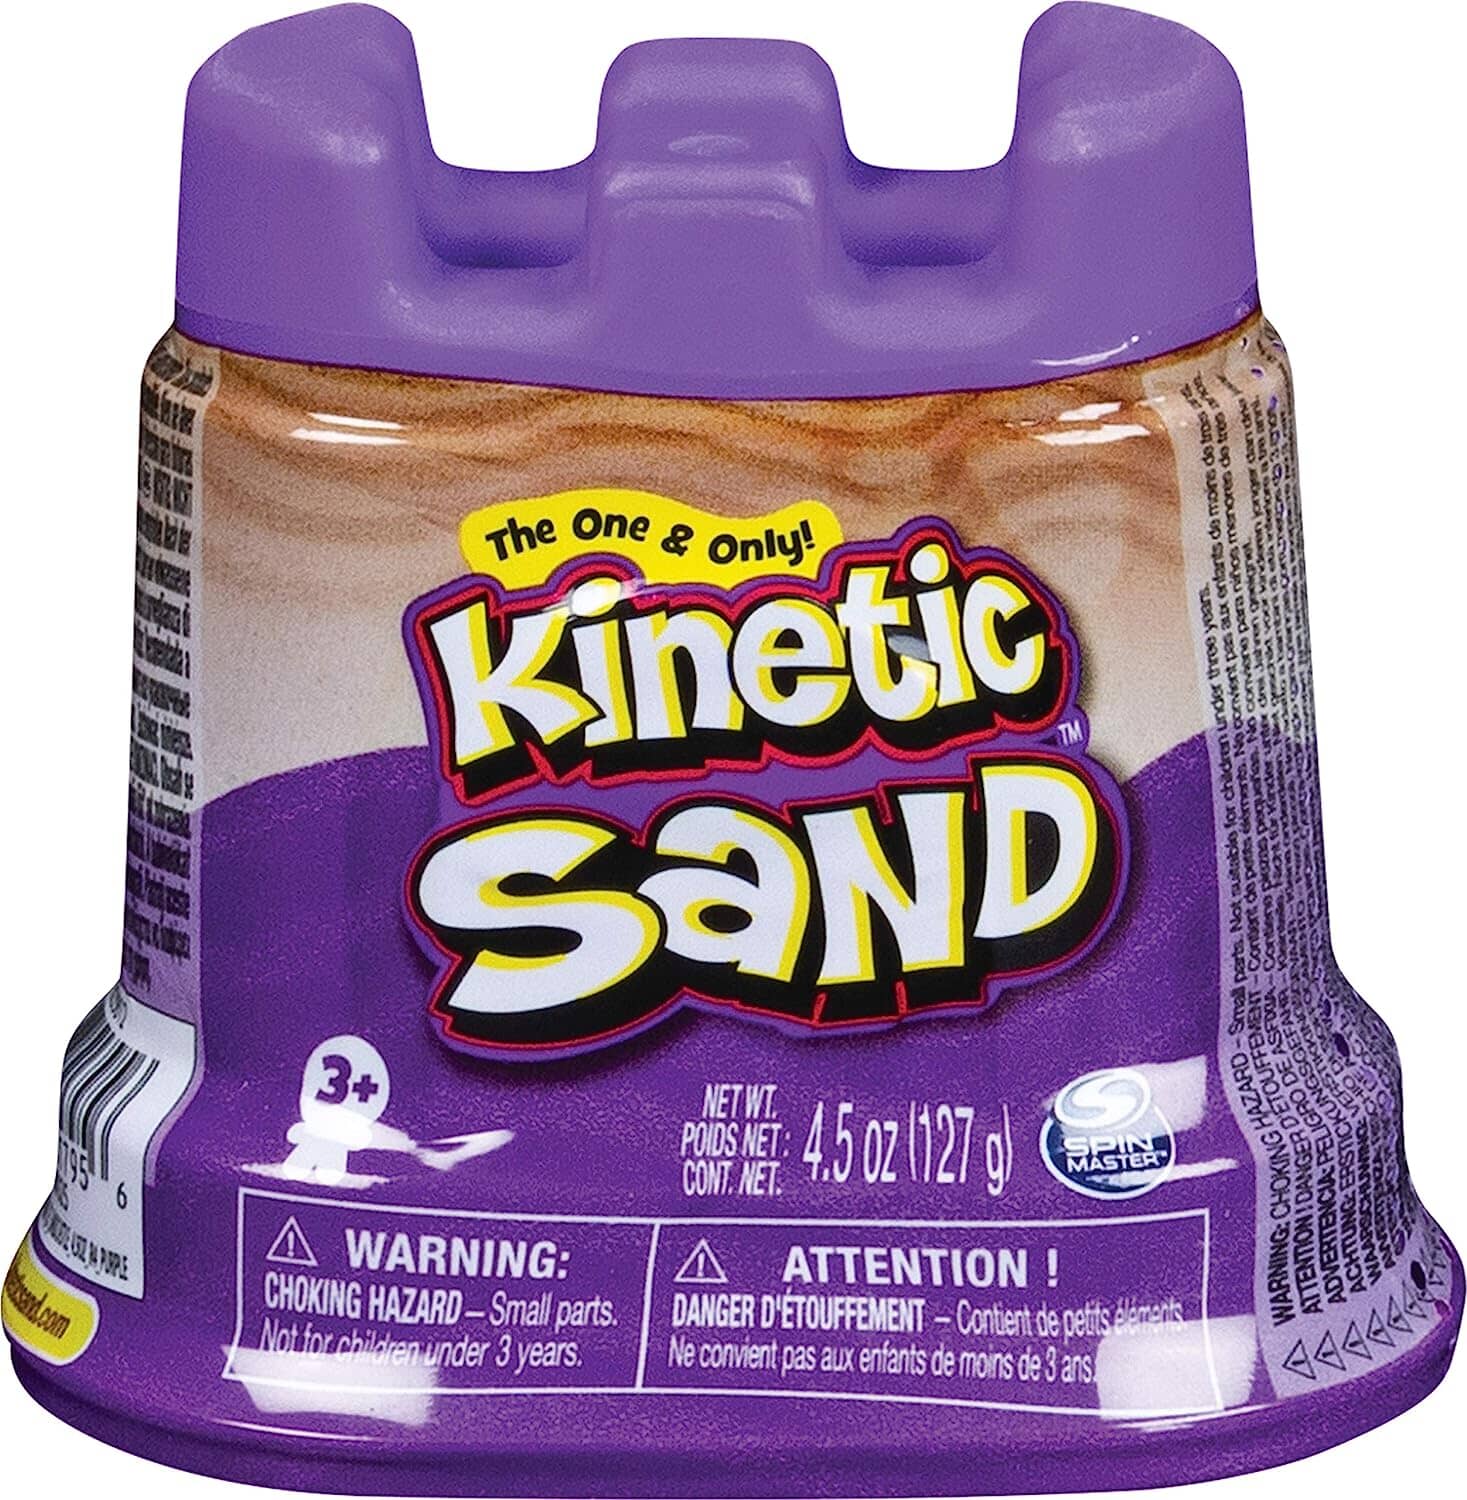 Castello Kinetic Sand toysvaldichiana.it 